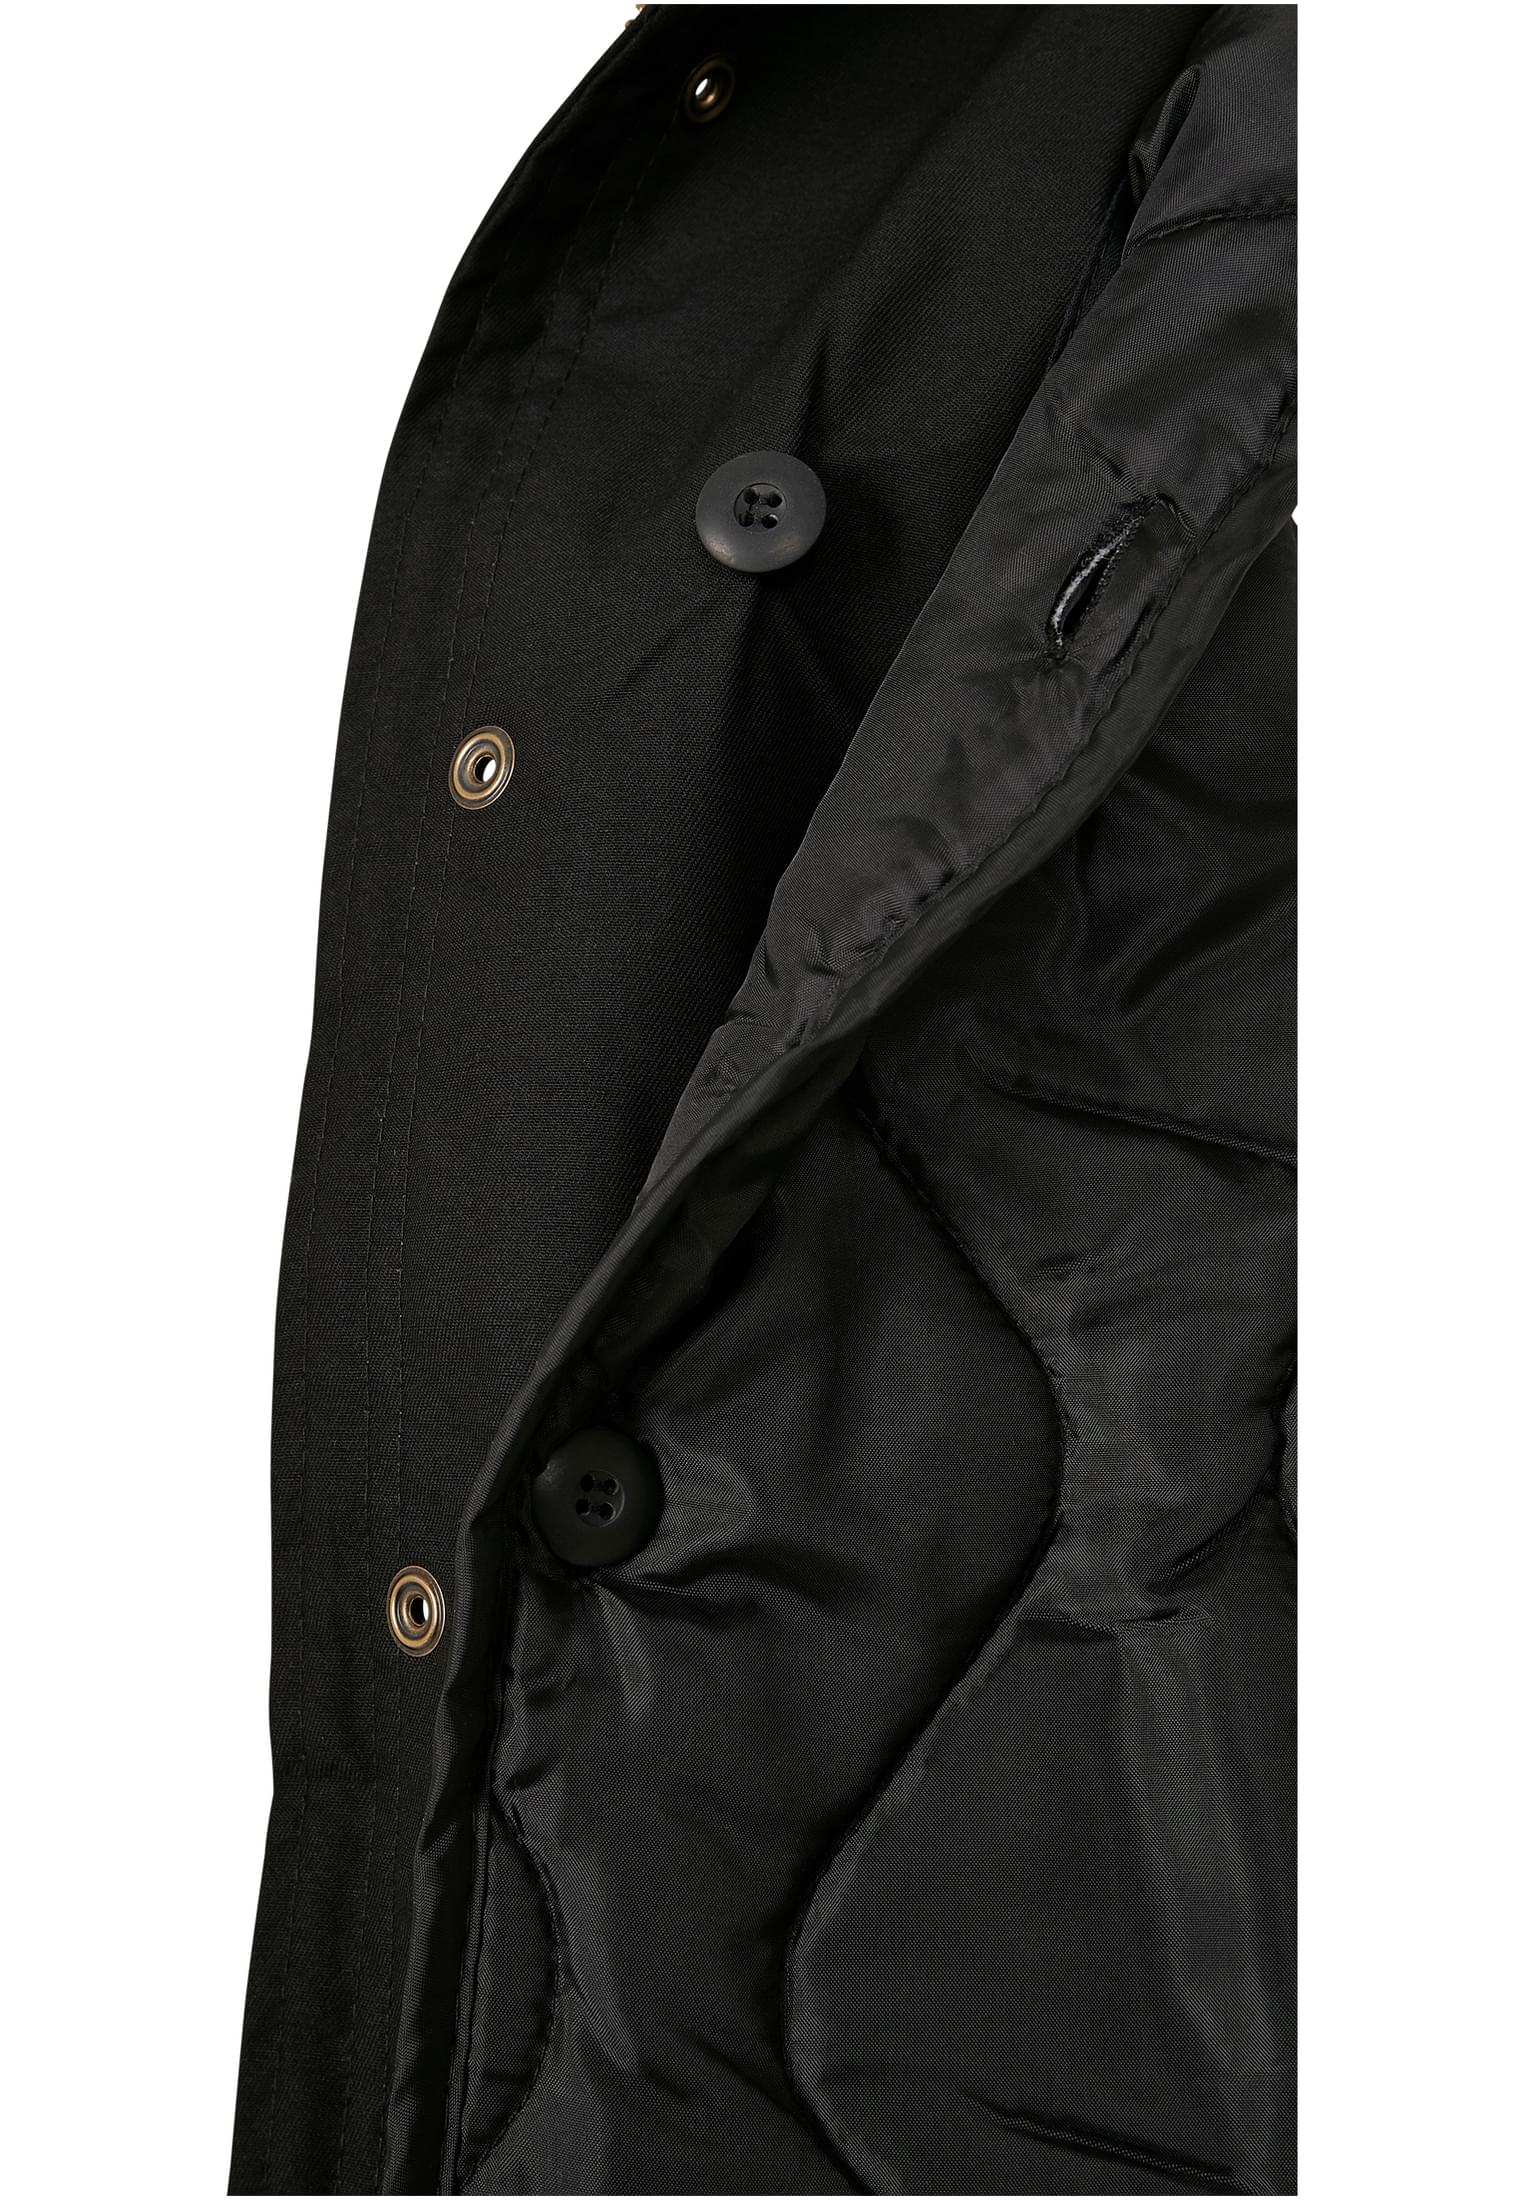 Jacken M-65 Field Jacket in Farbe black